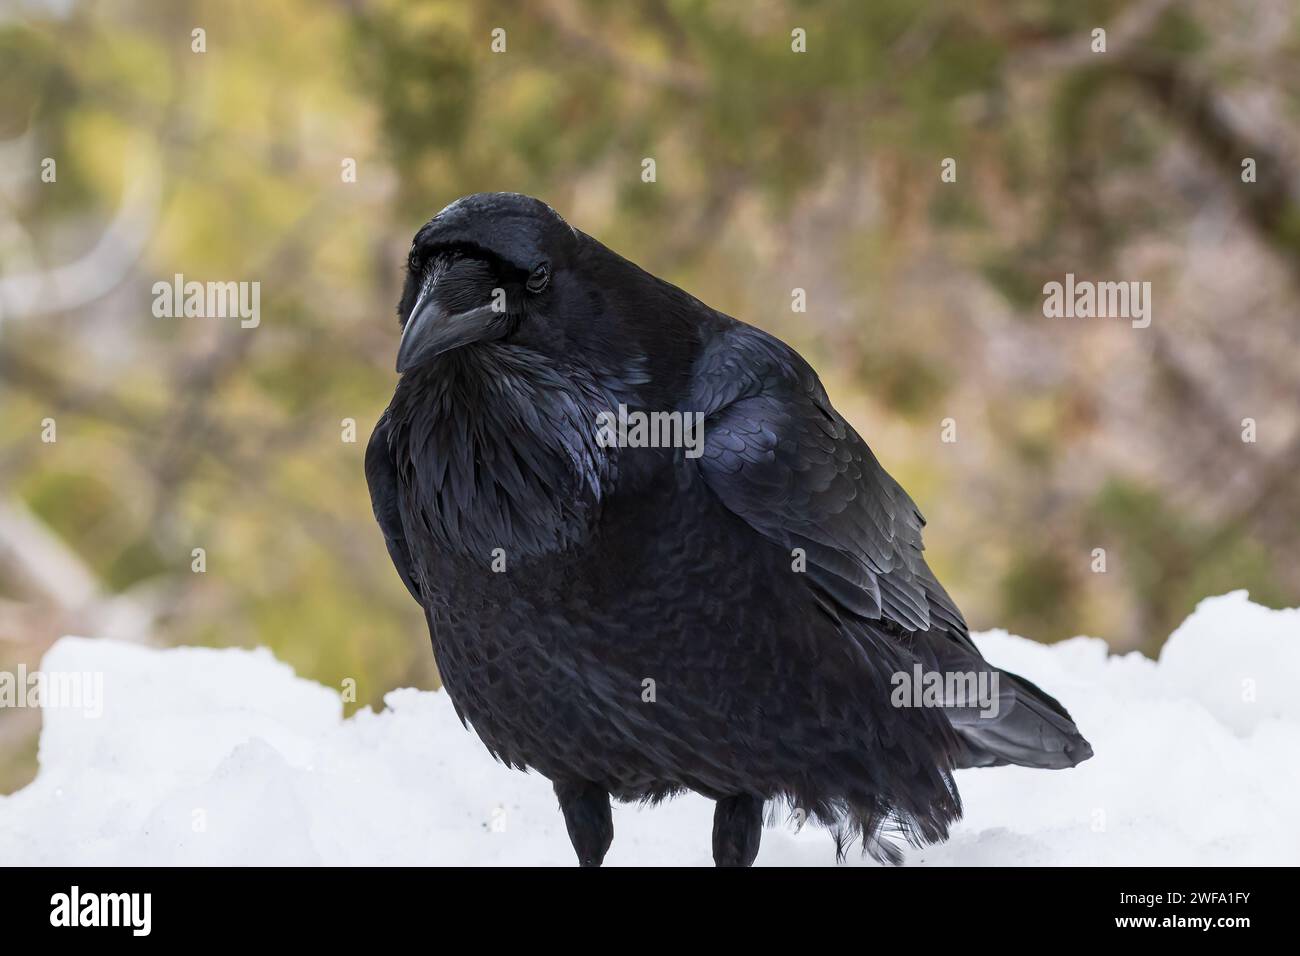 Common Raven (genere Corvus) in piedi sulla riva del neve, vista laterale, Parco Nazionale del Grand Canyon. Foresta in background. Foto Stock